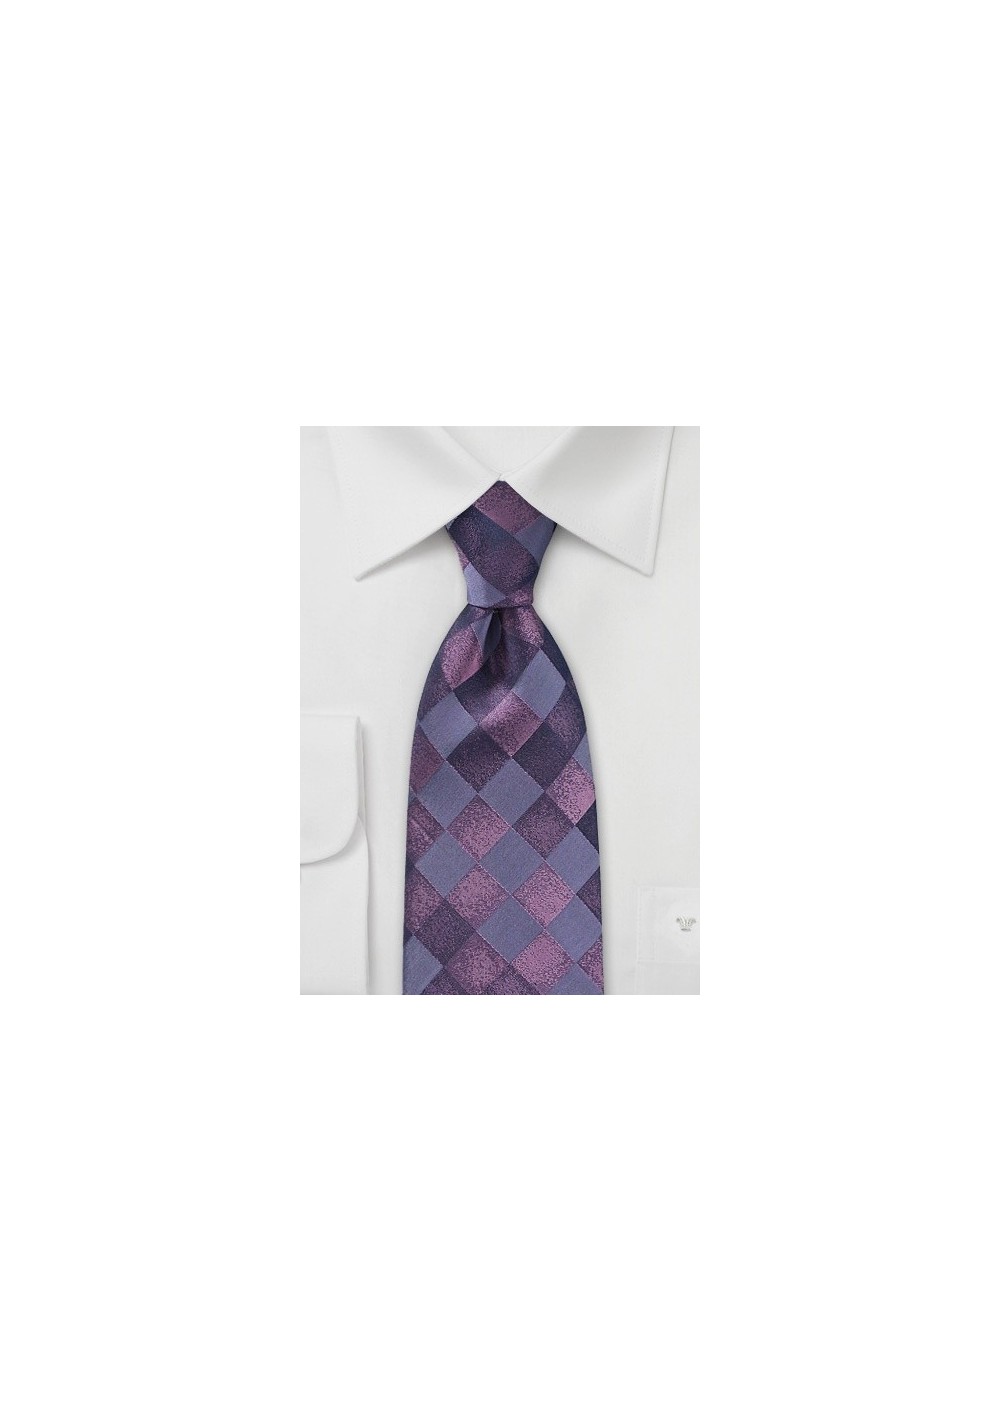 Large Diamond Patterned Tie in Viola Purple